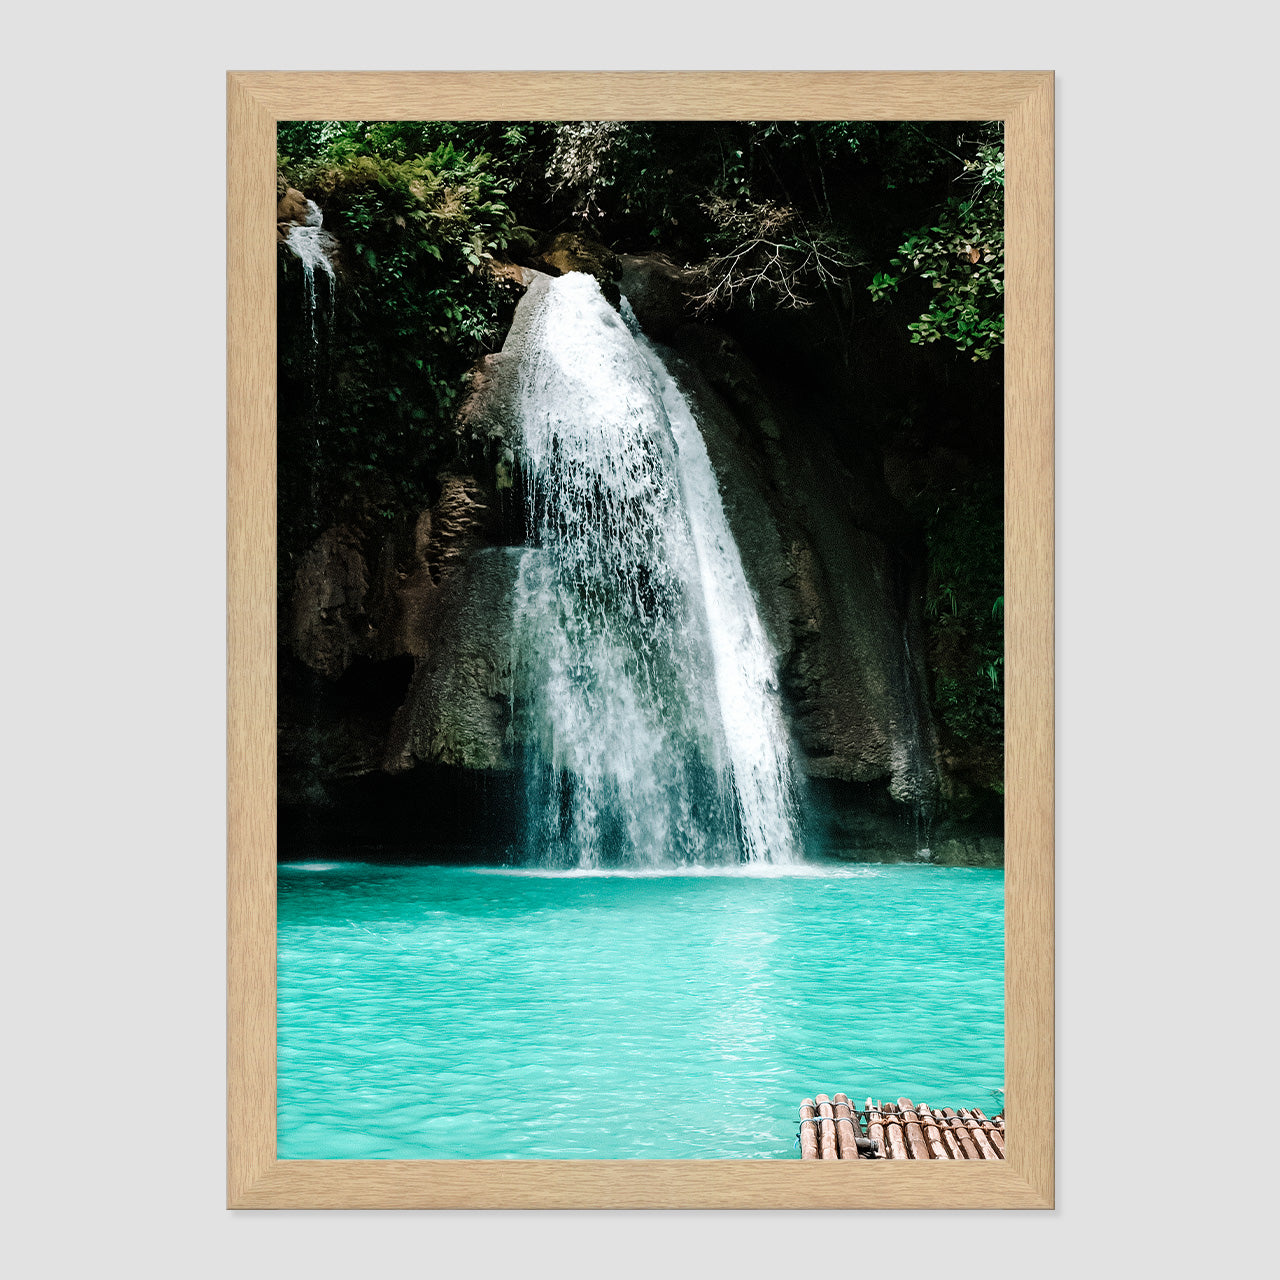 Chasing Waterfalls Photo Print A3 Natural Timber Frame